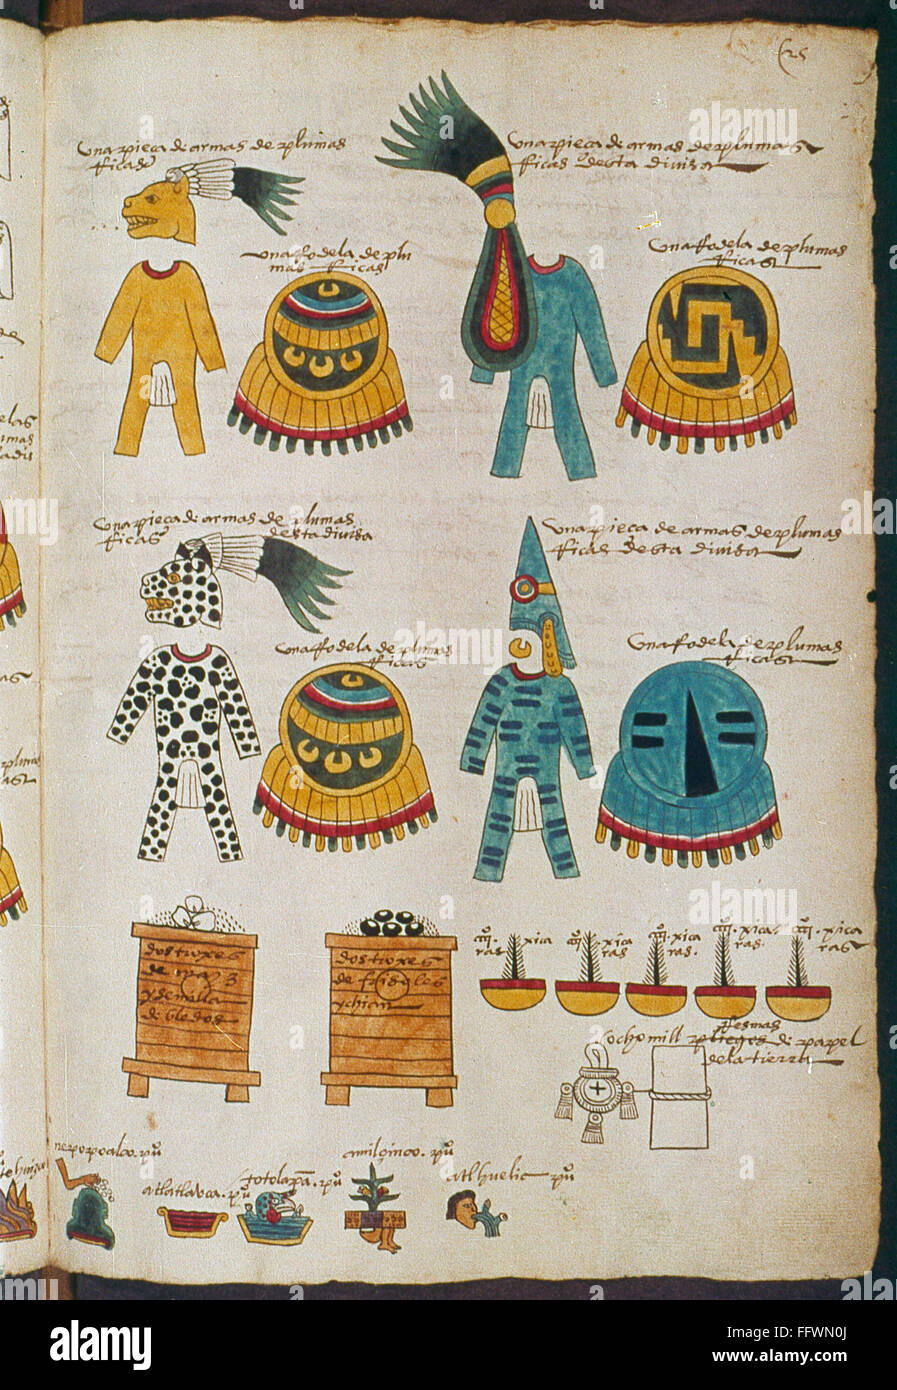 México: Los Aztecas ilustraciones. /NAztec ropa y otros artefactos probablemente utilizados en ceremonias religiosas. Página del manuscrito iluminado, probablemente desde el Codex Magliabechiano, de mediados del siglo XVI. Foto de stock